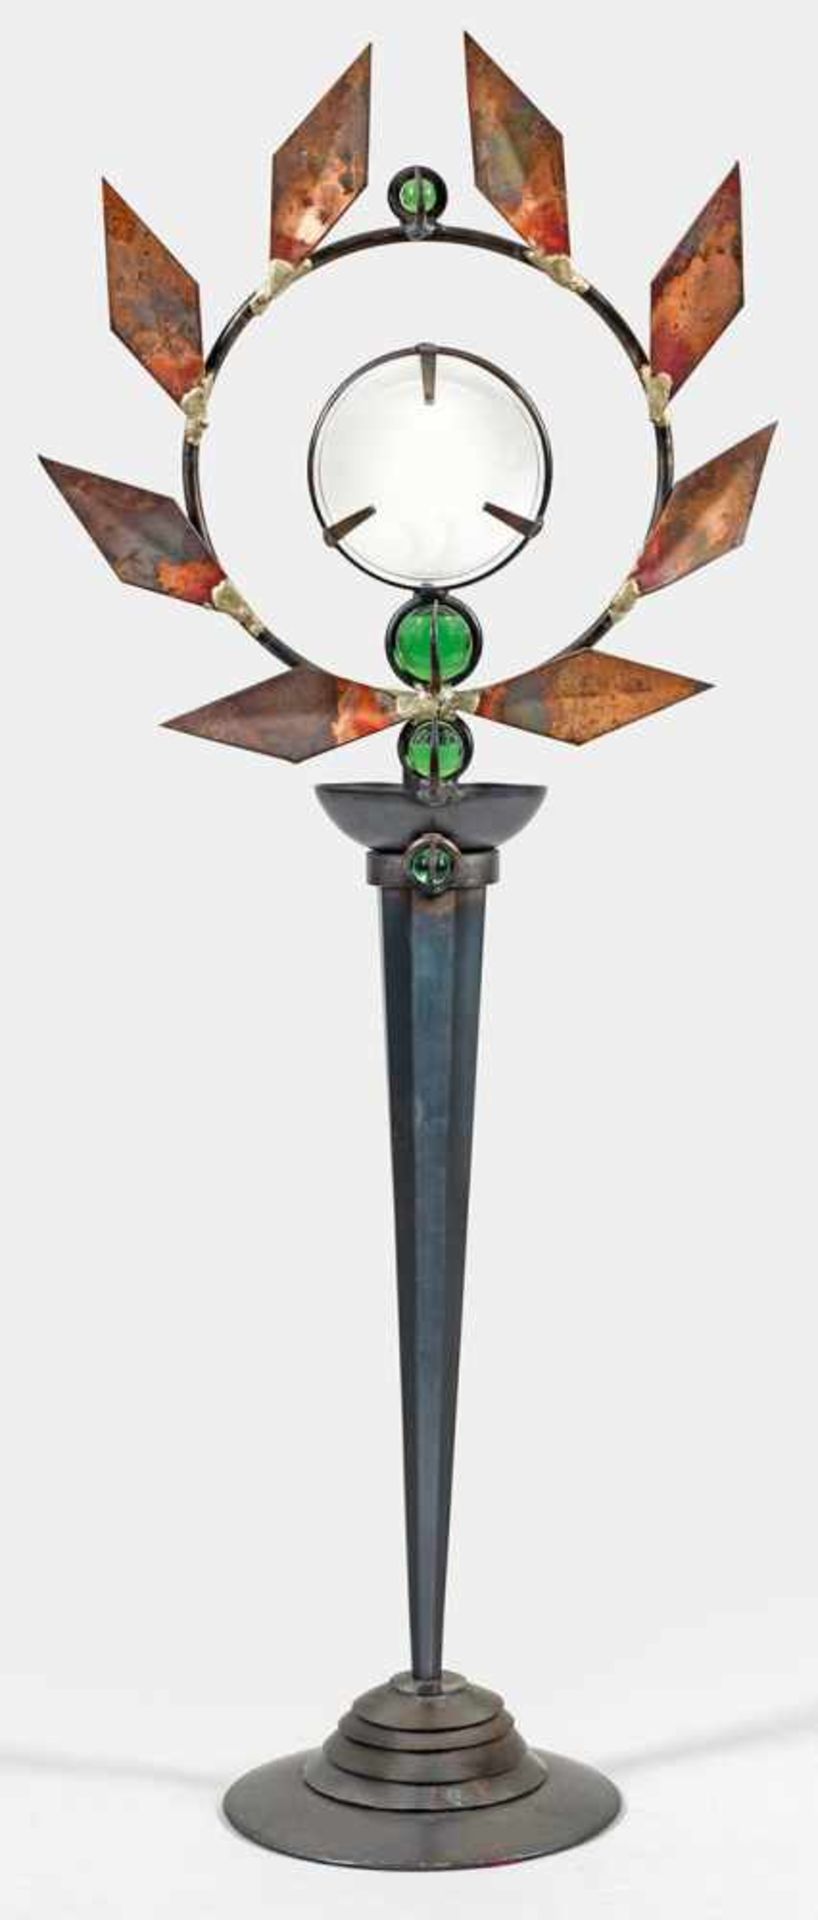 Leuchtobjekt "Olympia" von Mark Brazier-Jones1-flg.; Stahl, Kupfer sowie farbloses und grünes